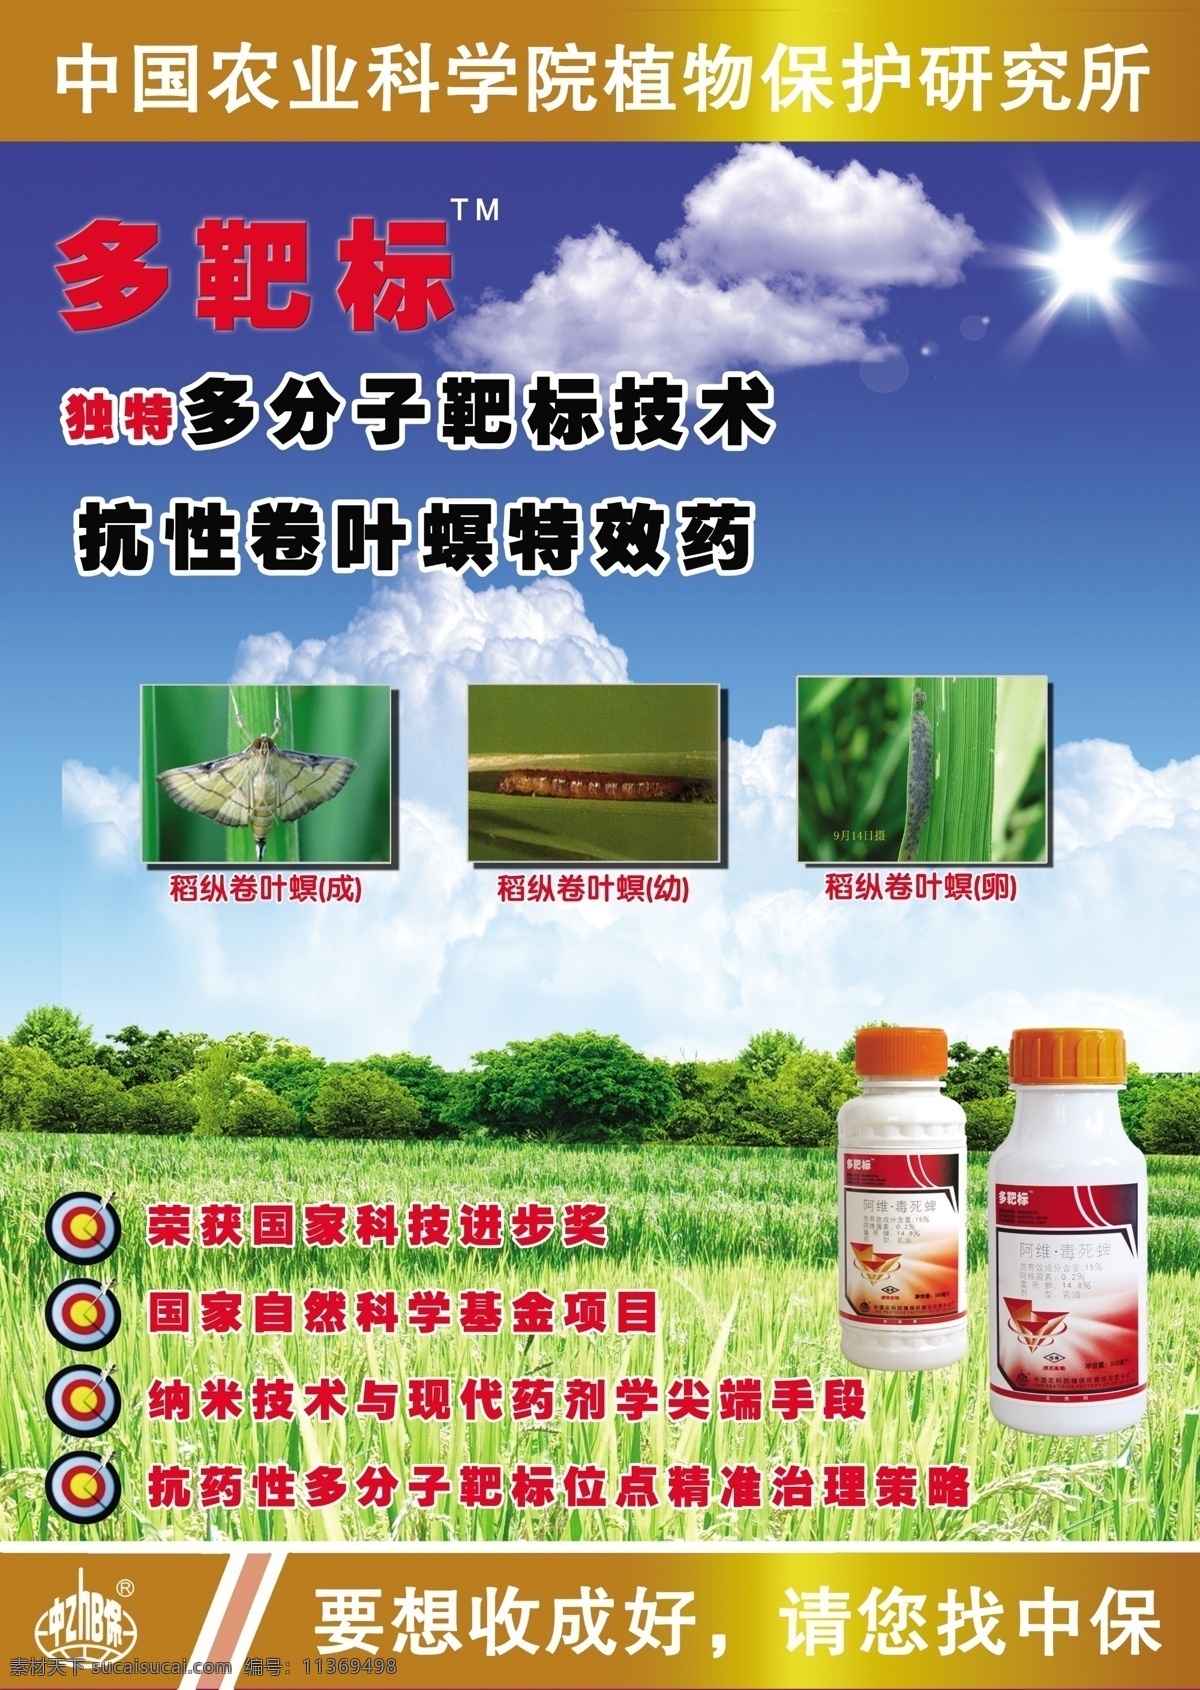 农药 卷叶螟 农化 产品 宣传海报 水稻 宣传画 海报 pop 天空 白云 山 广告设计模板 源文件